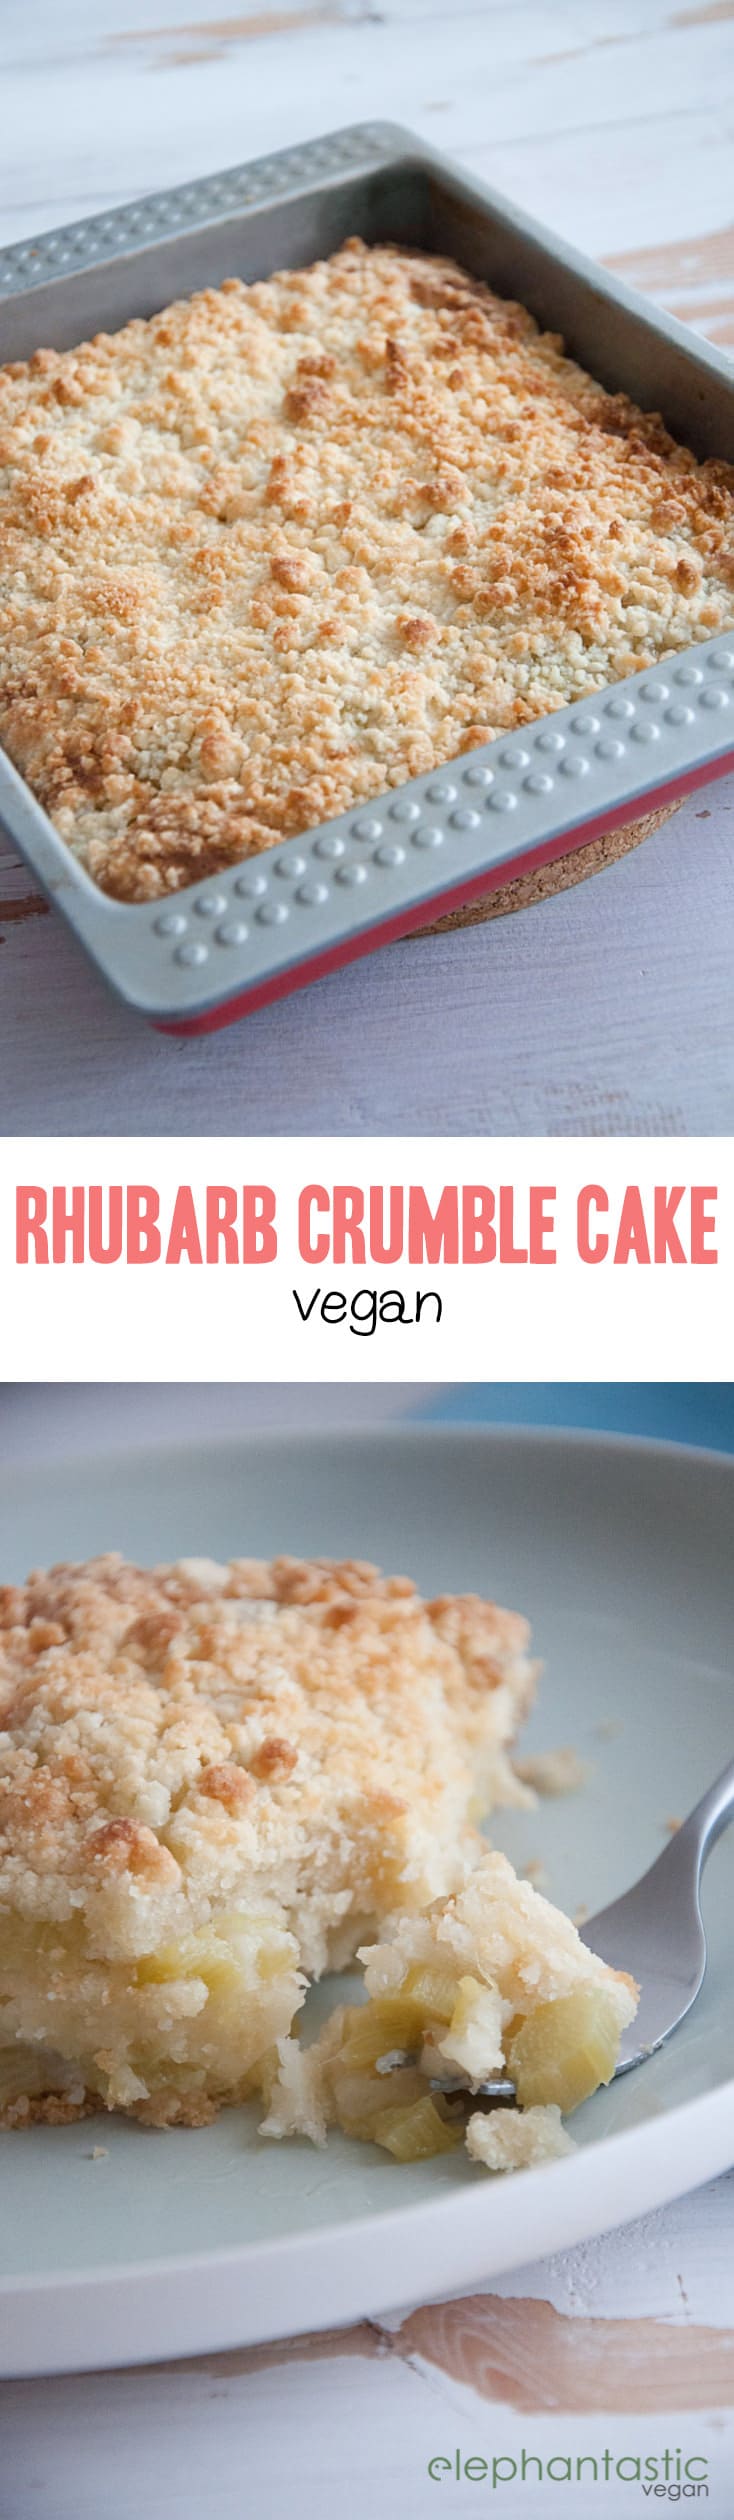 Vegan Rhubarb Crumble Cake | ElephantasticVegan.com